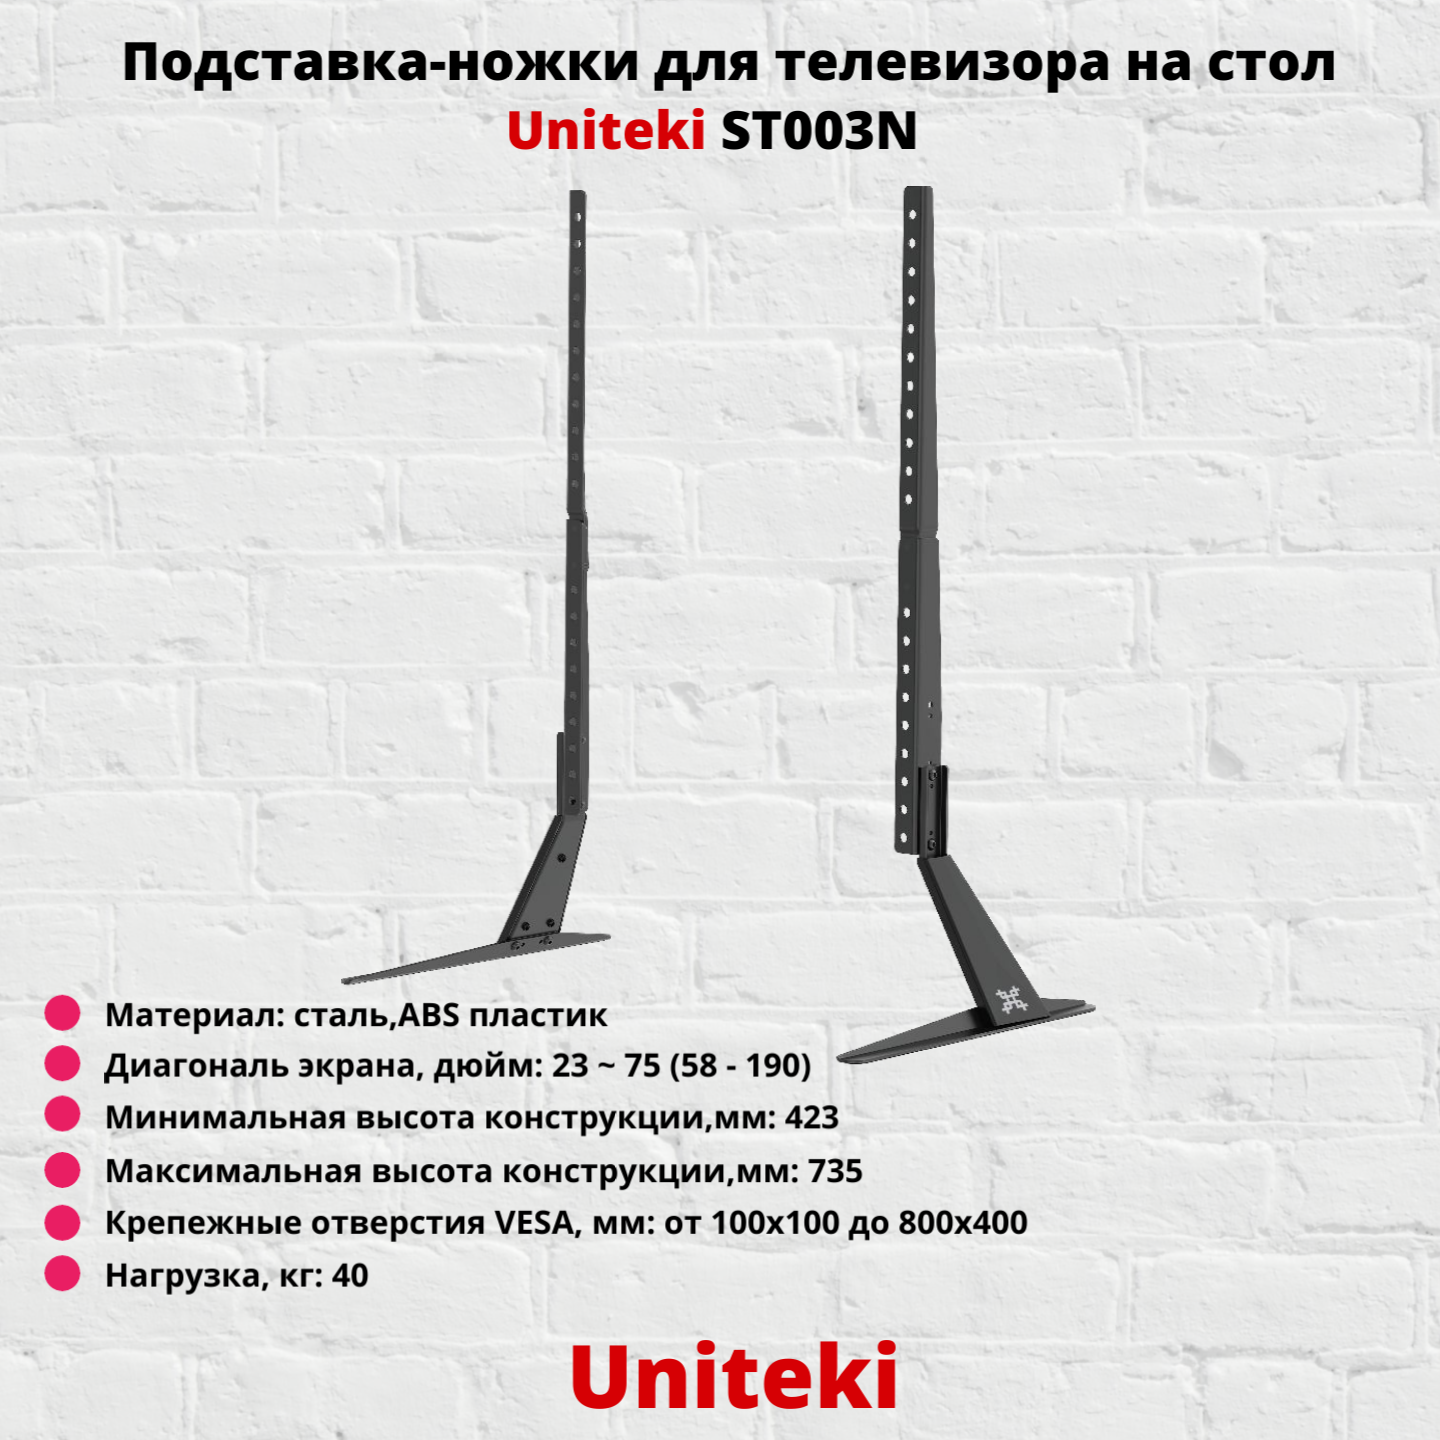 Подставка-ножки для телевизора настольная с диагональю 23"-75" UniTeki ST003N, черный